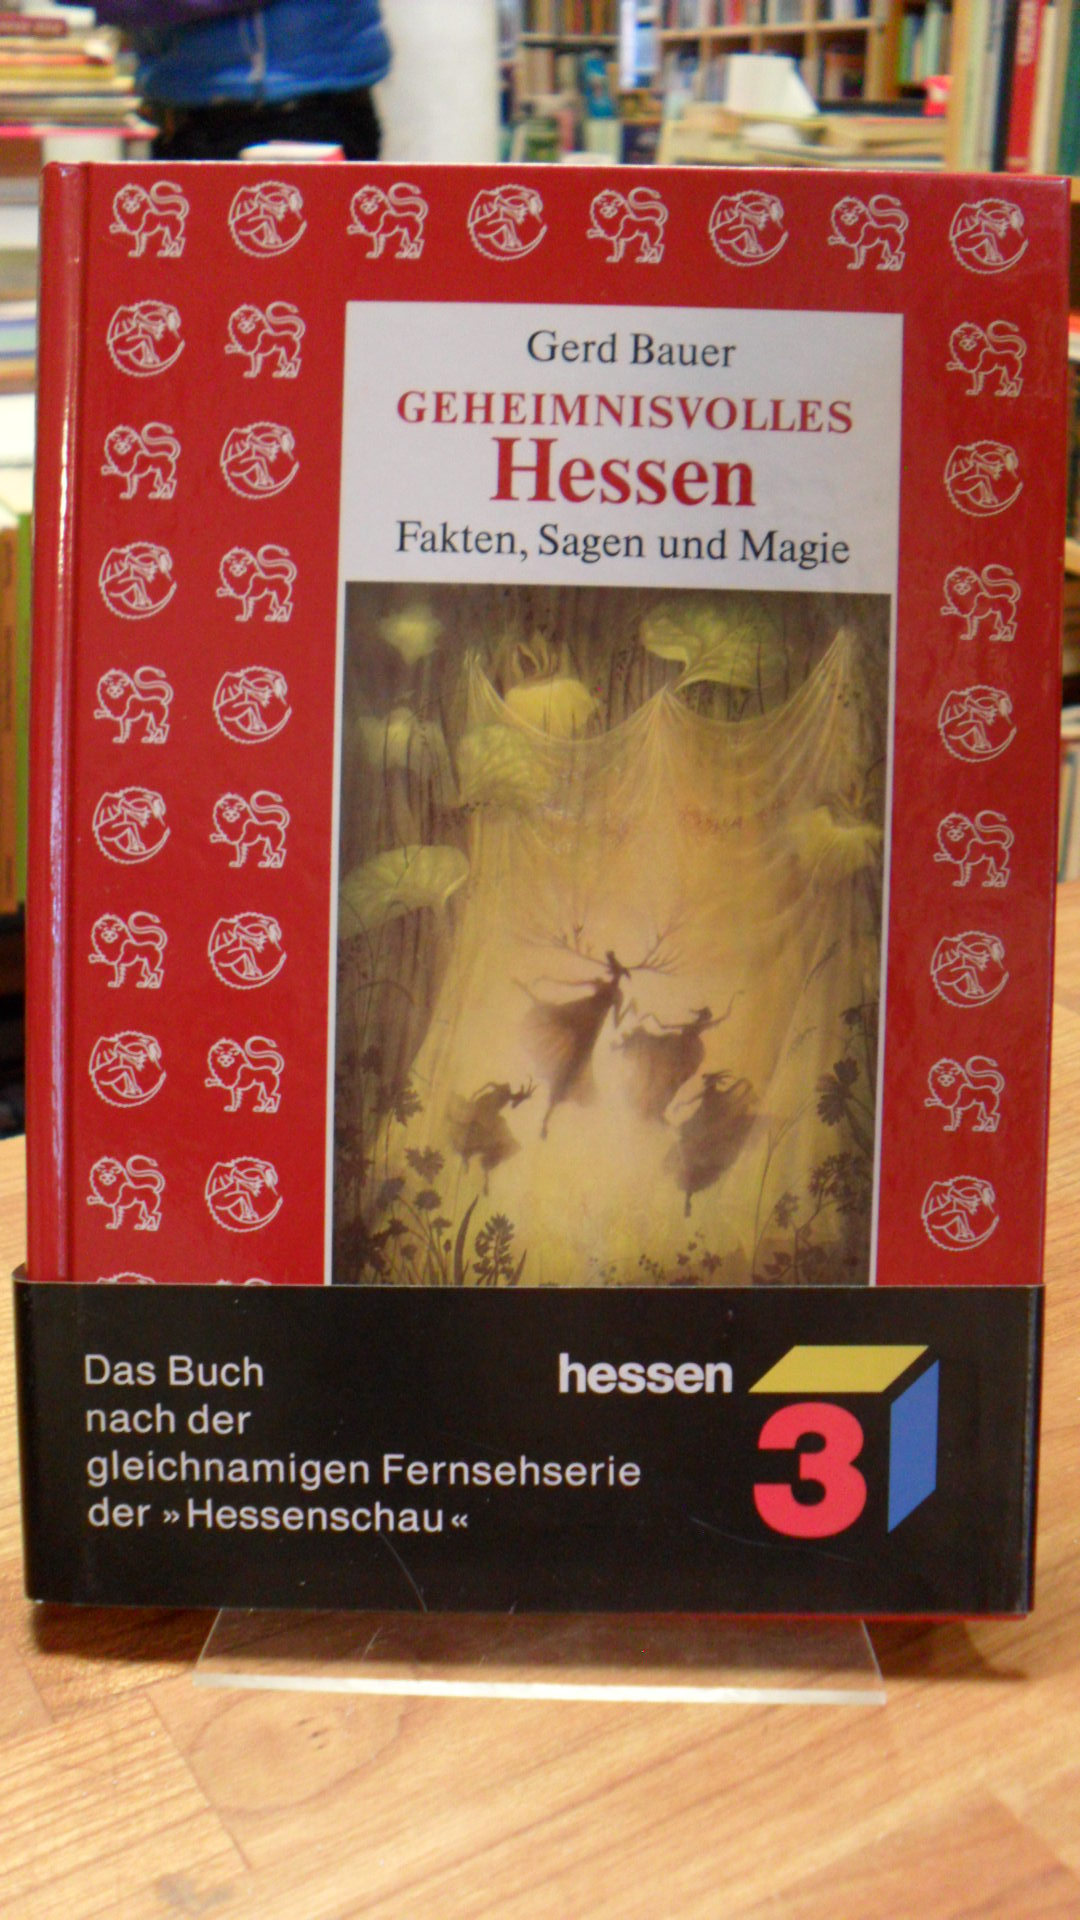 Bauer, Geheimnisvolles Hessen – Fakten, Sagen und Magie – Ein Handbuch des Denk-